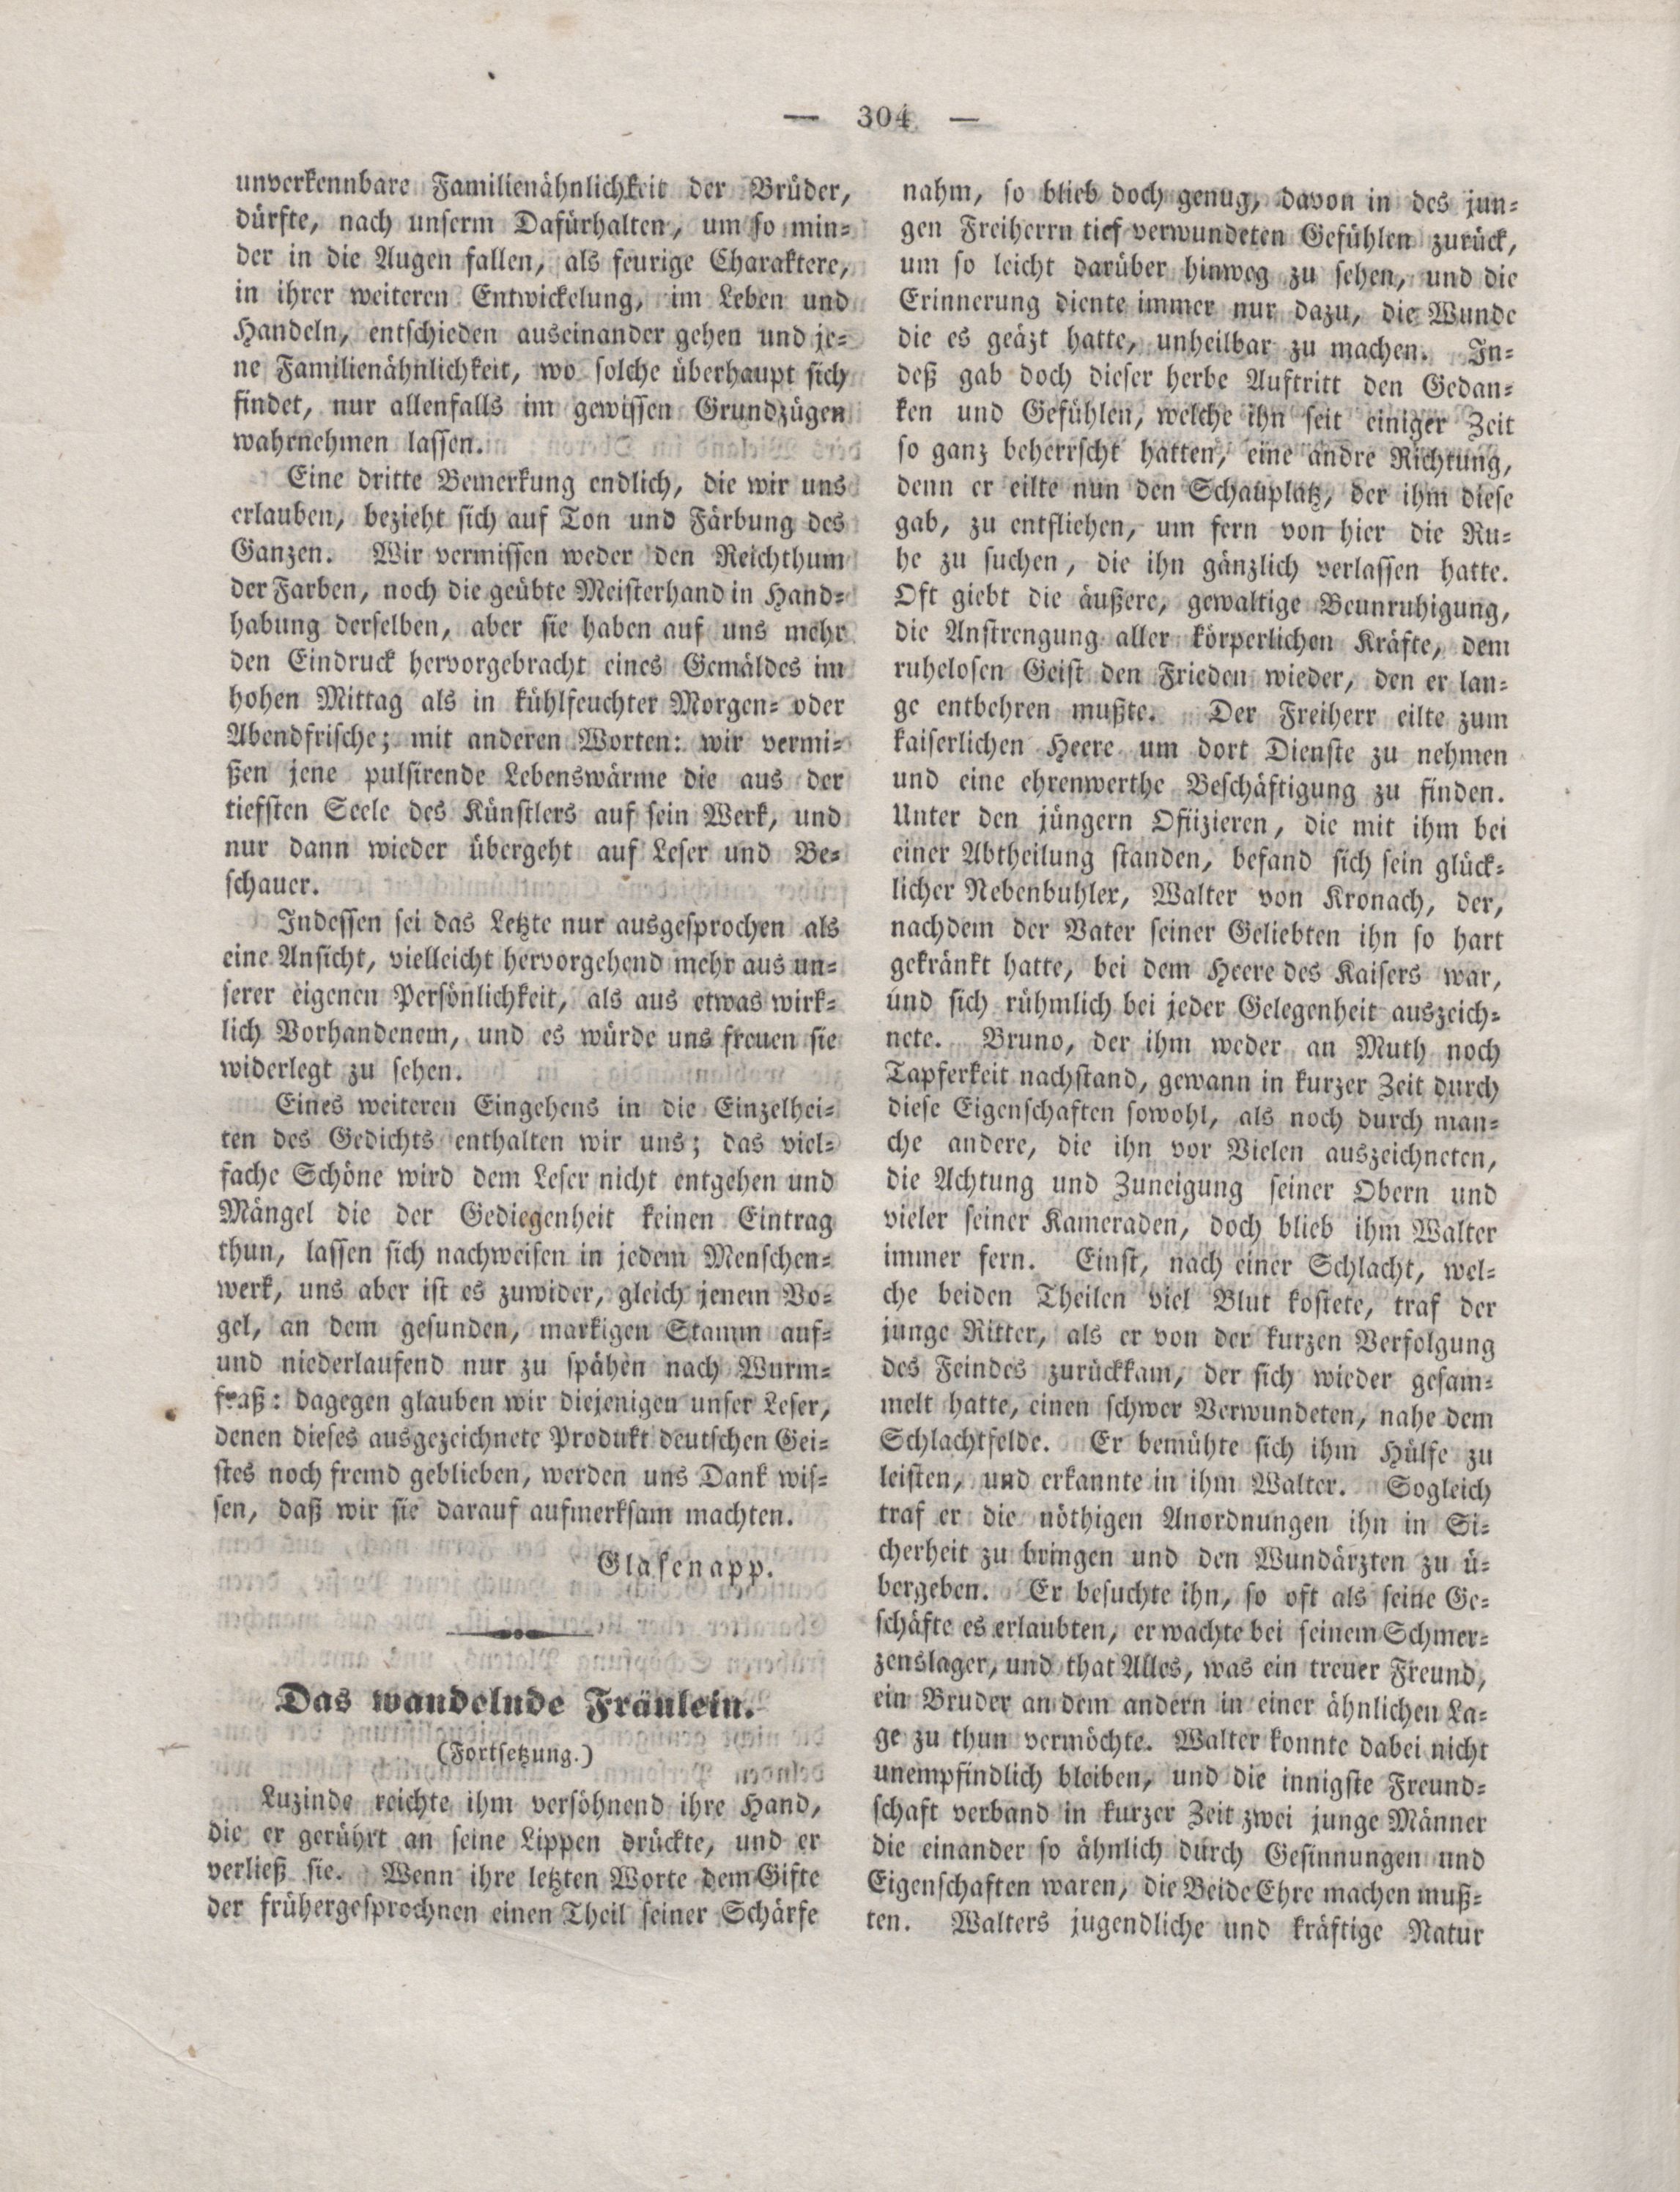 Der Refraktor [1837] (1837) | 20. (304) Haupttext